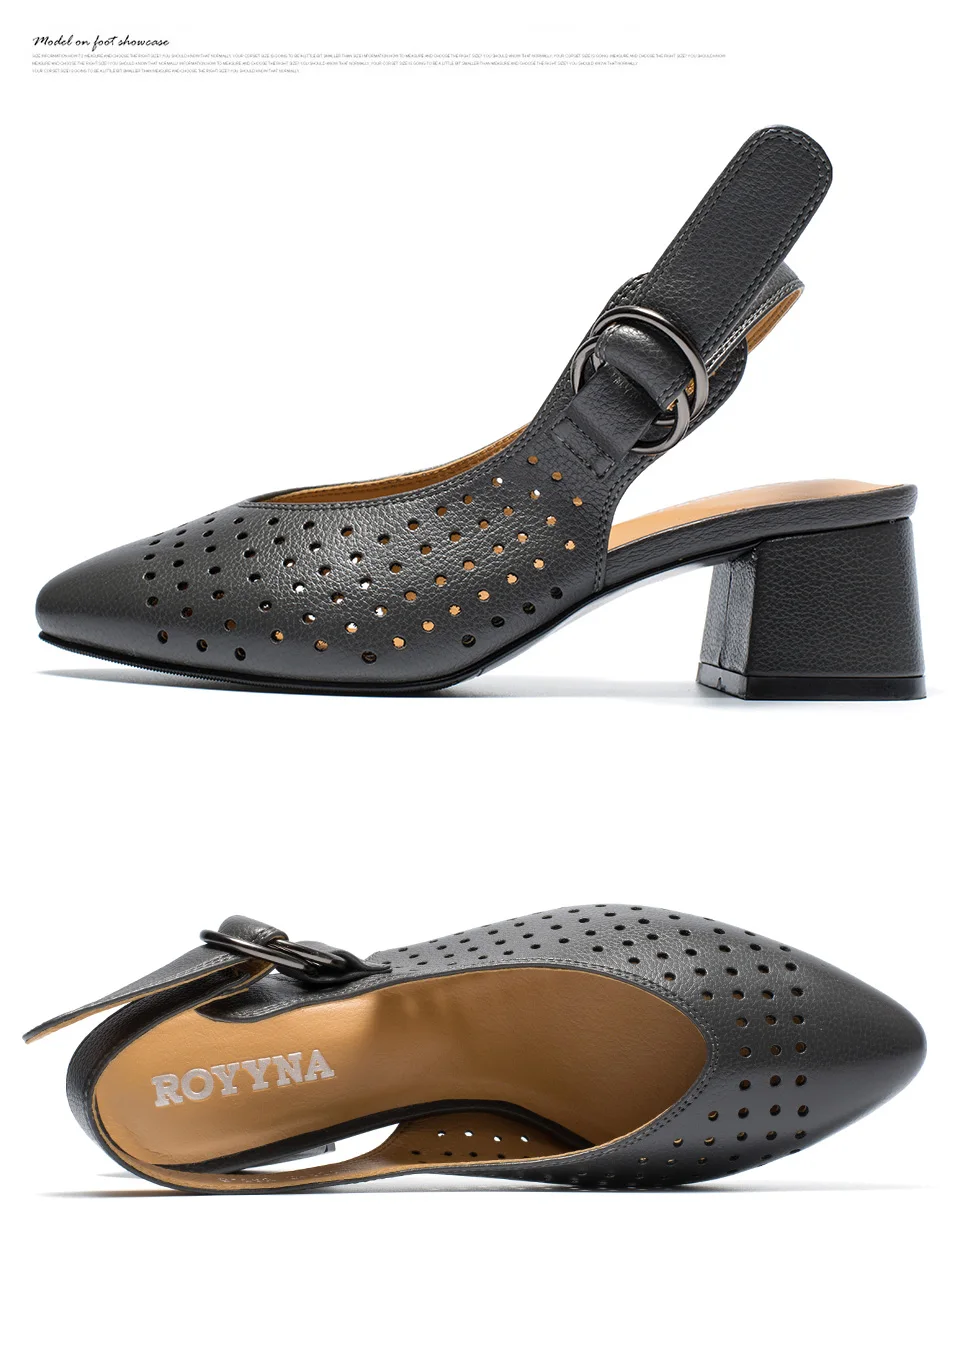 ROYYNA/Новинка; модные стильные женские босоножки с пряжкой; Femme; Летняя обувь в горошек; удобная женская обувь; Chaussure Femme zapatos mujer